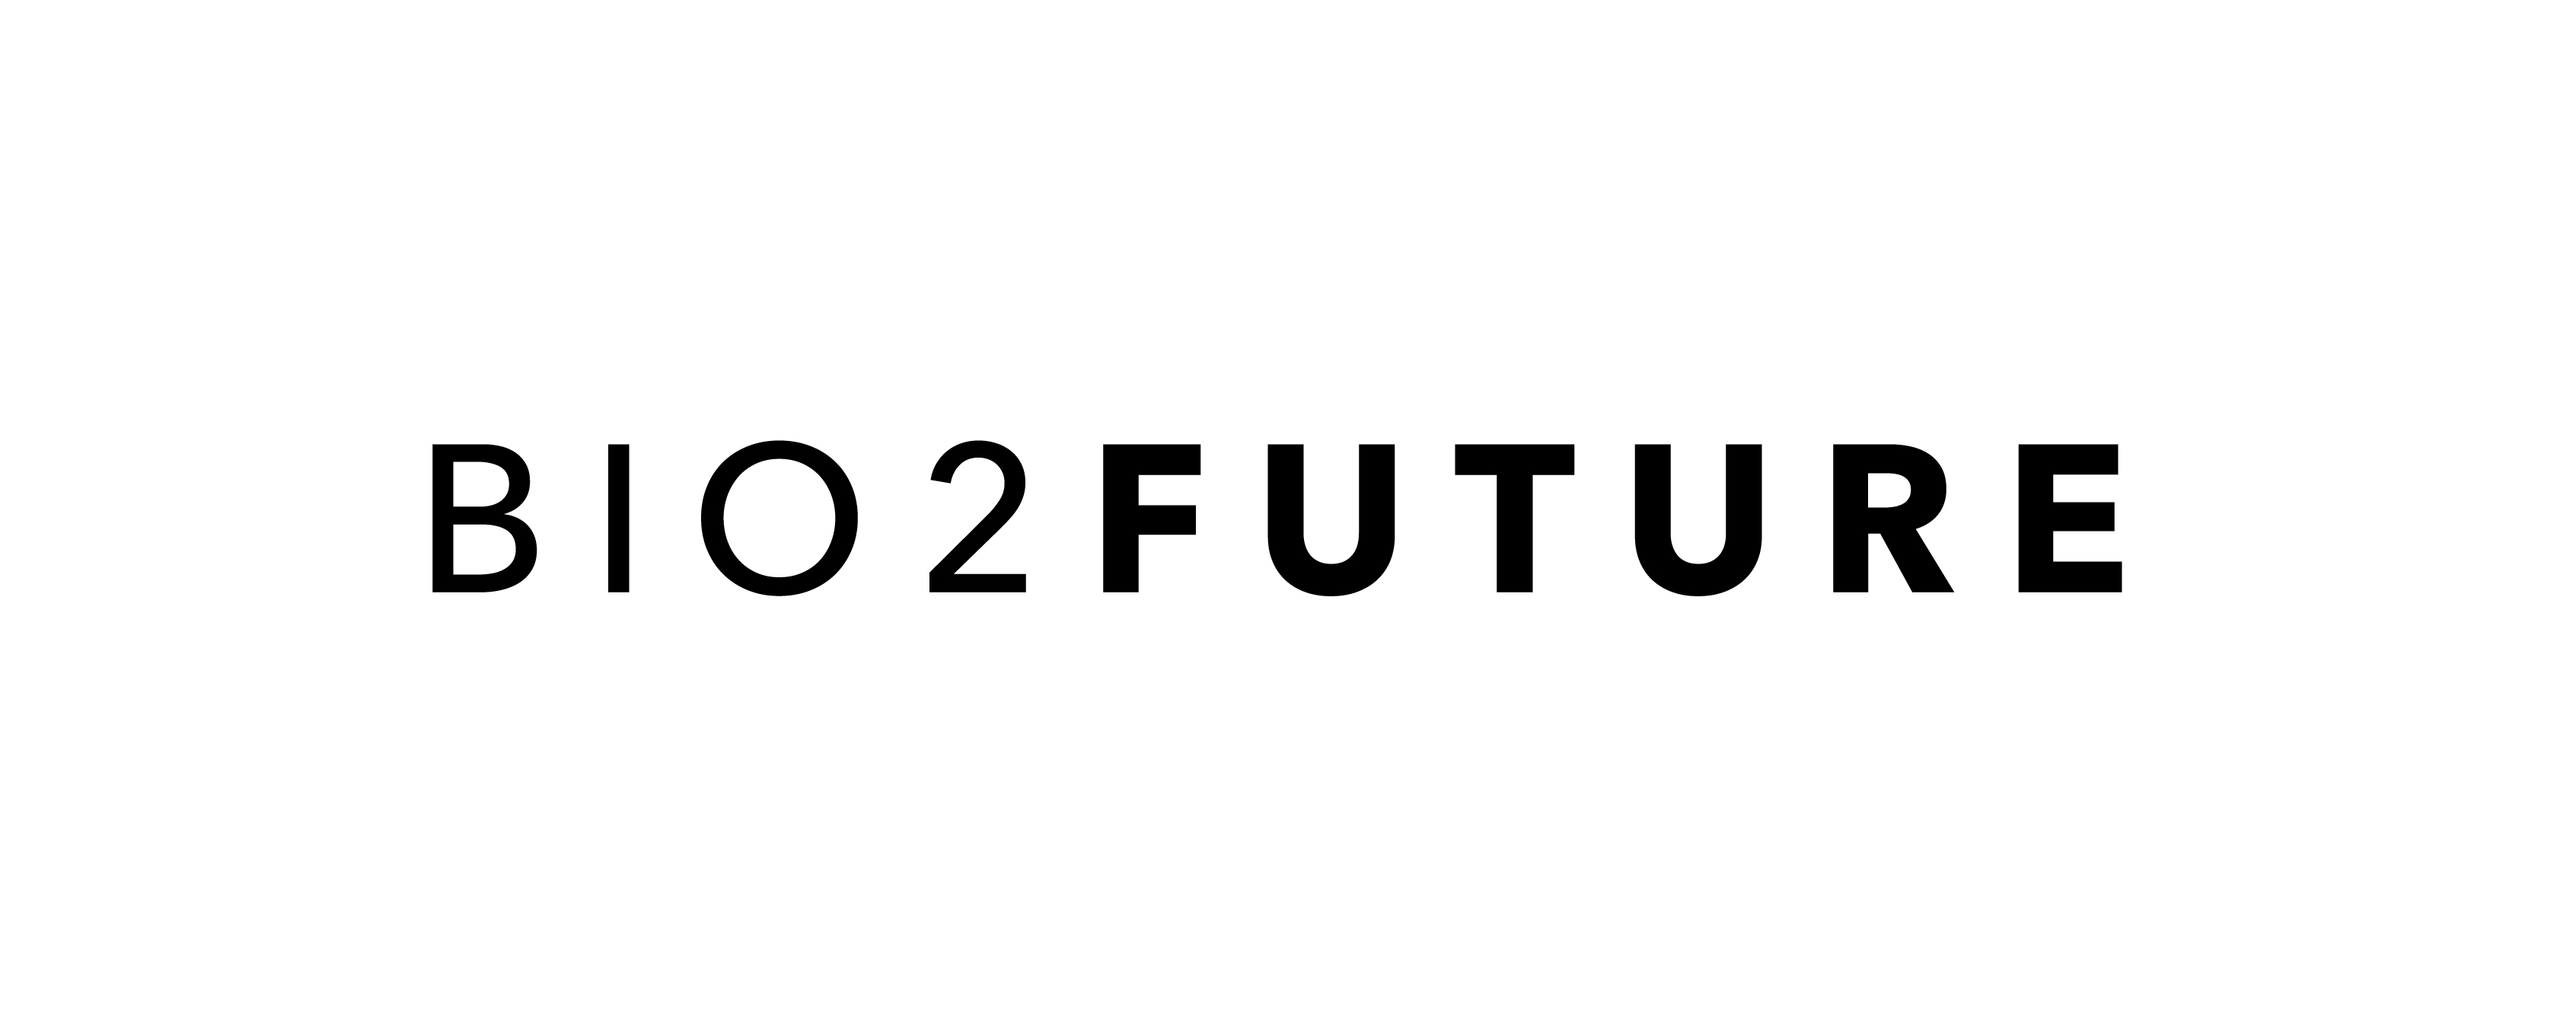 BIO2FUTURE-logo.jpg